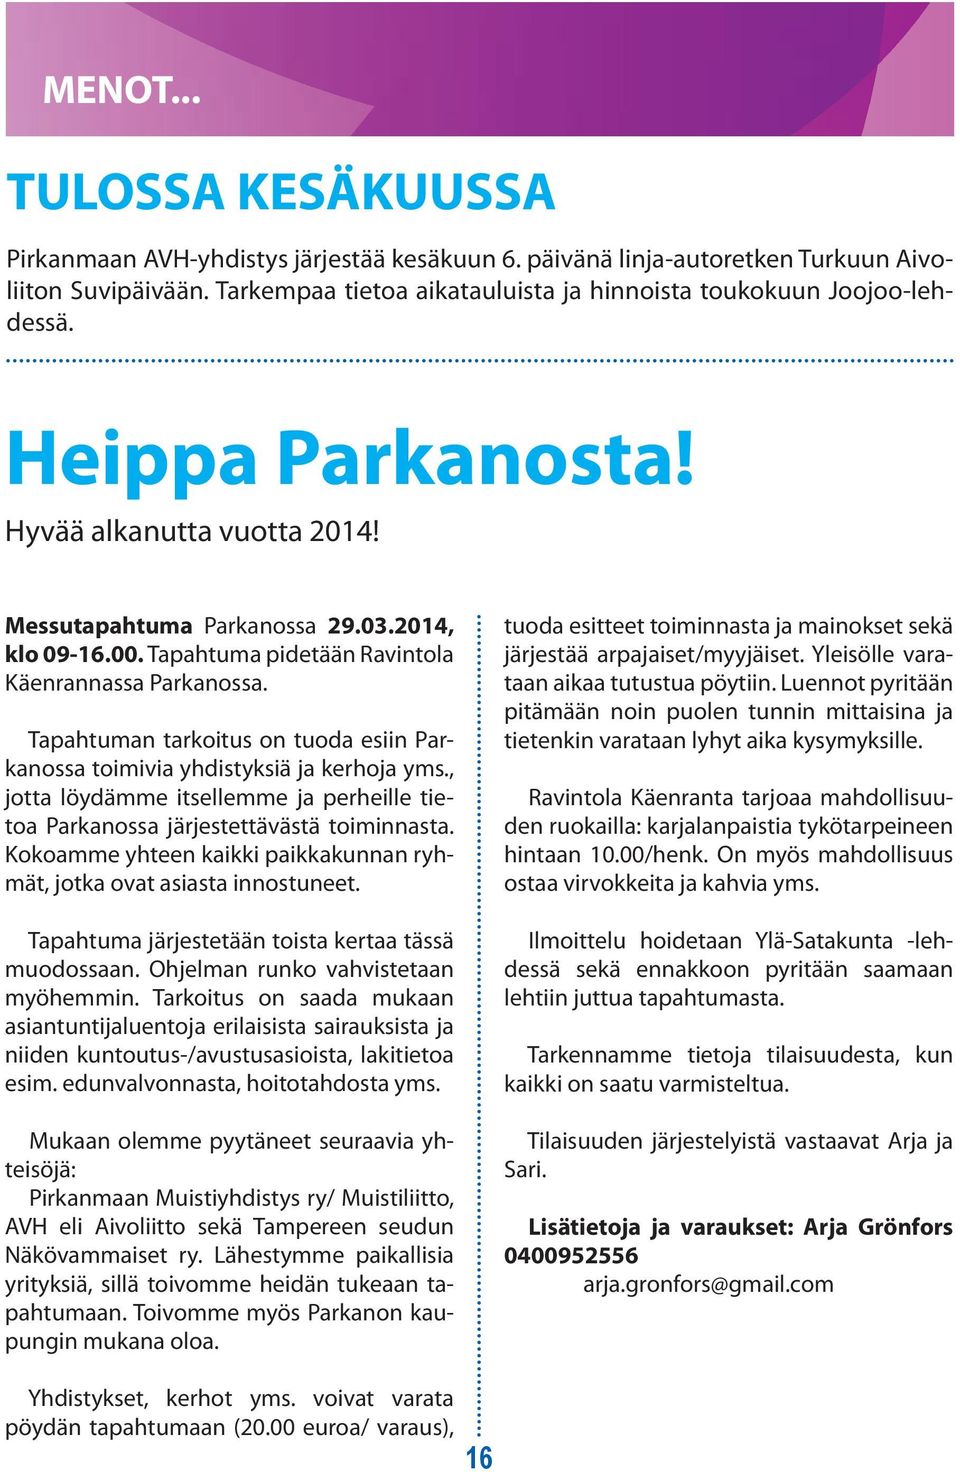 Suomessa arvioidaan Tapahtuma olevan noin pidetään 82 000 aivoverenkiertohäiriön sairastanutta. Ravintola Käenrannassa Parkanossa.